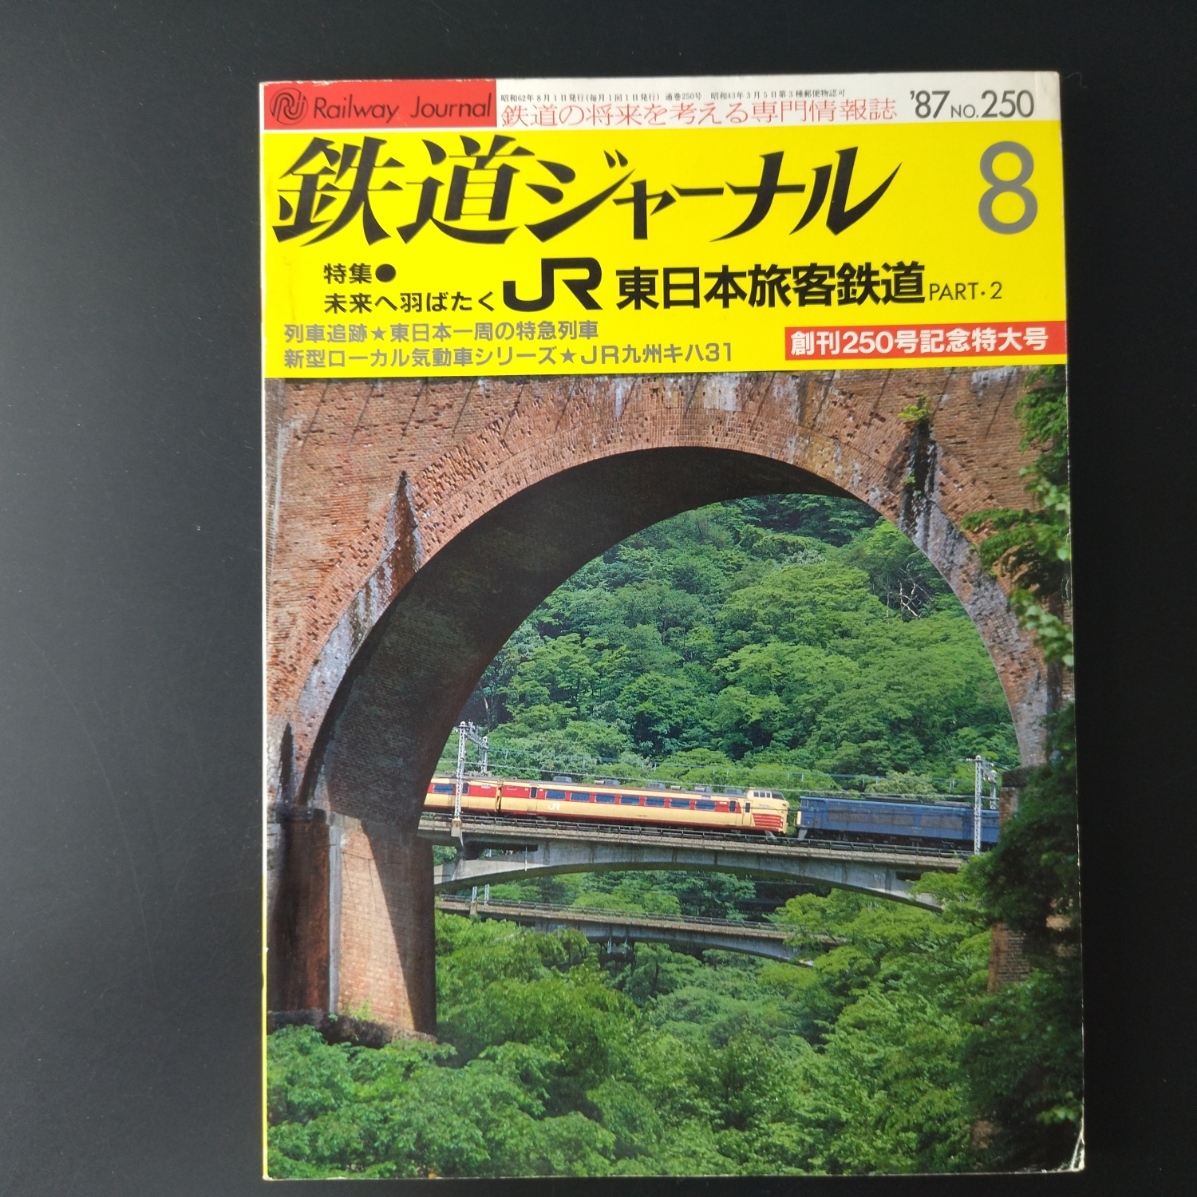 1987 год выпуск *..250 номер память очень большой номер [ Railway Journal ] специальный выпуск * будущее . перо ...JR Восточная Япония . покупатель железная дорога *Part2.... др. 